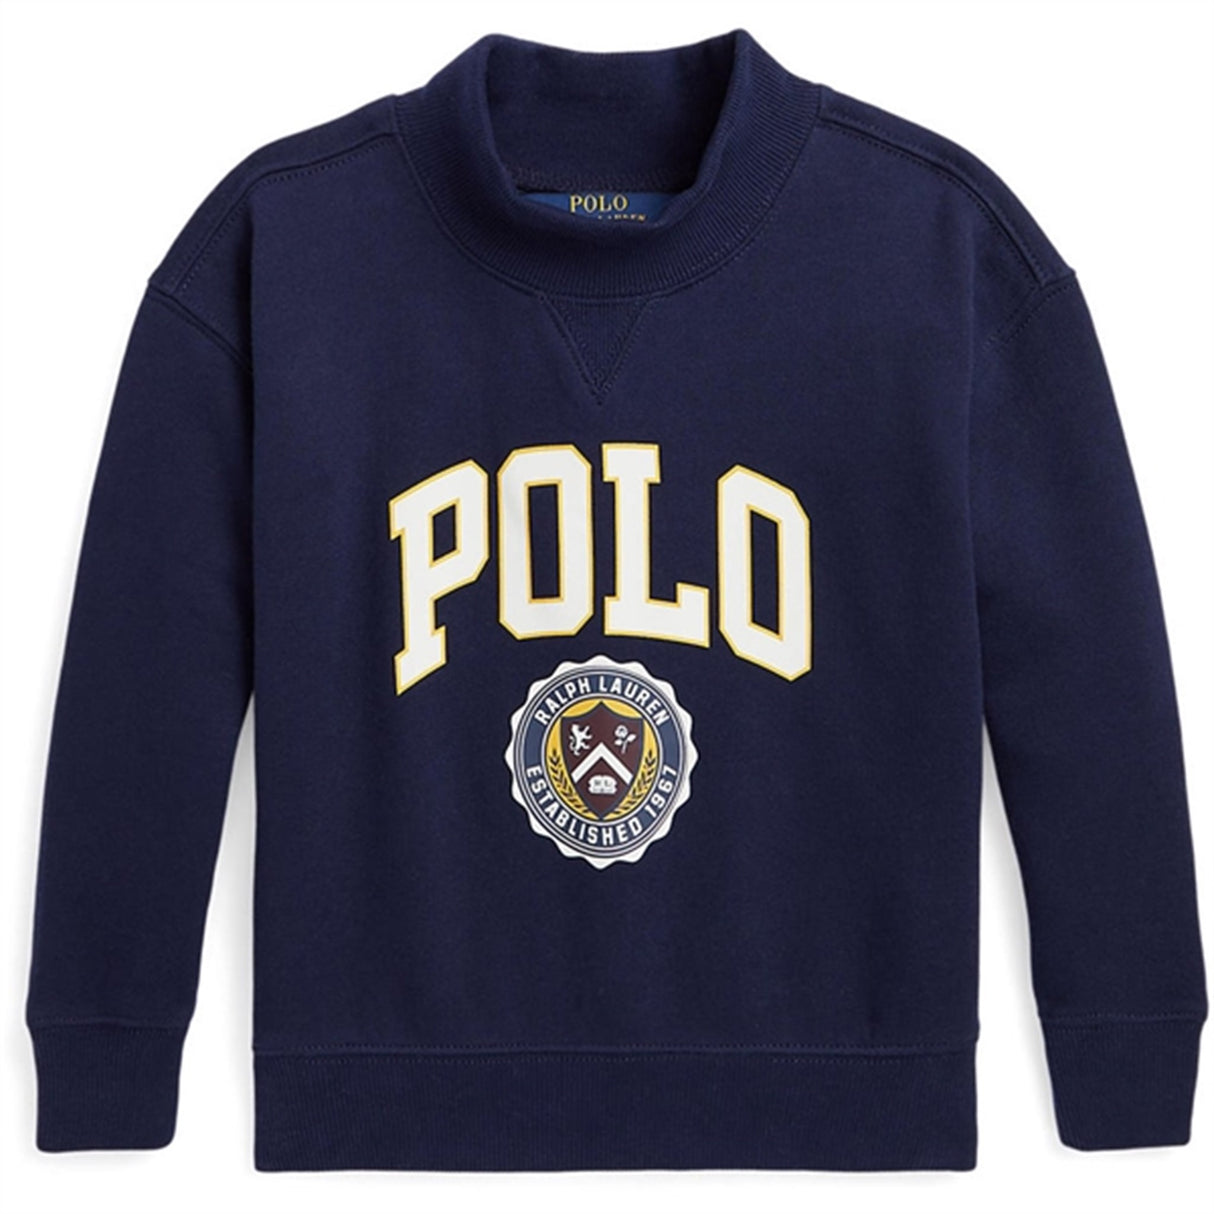 Polo Ralph Lauren Girl Varsity Sweatshirt Refined Navy